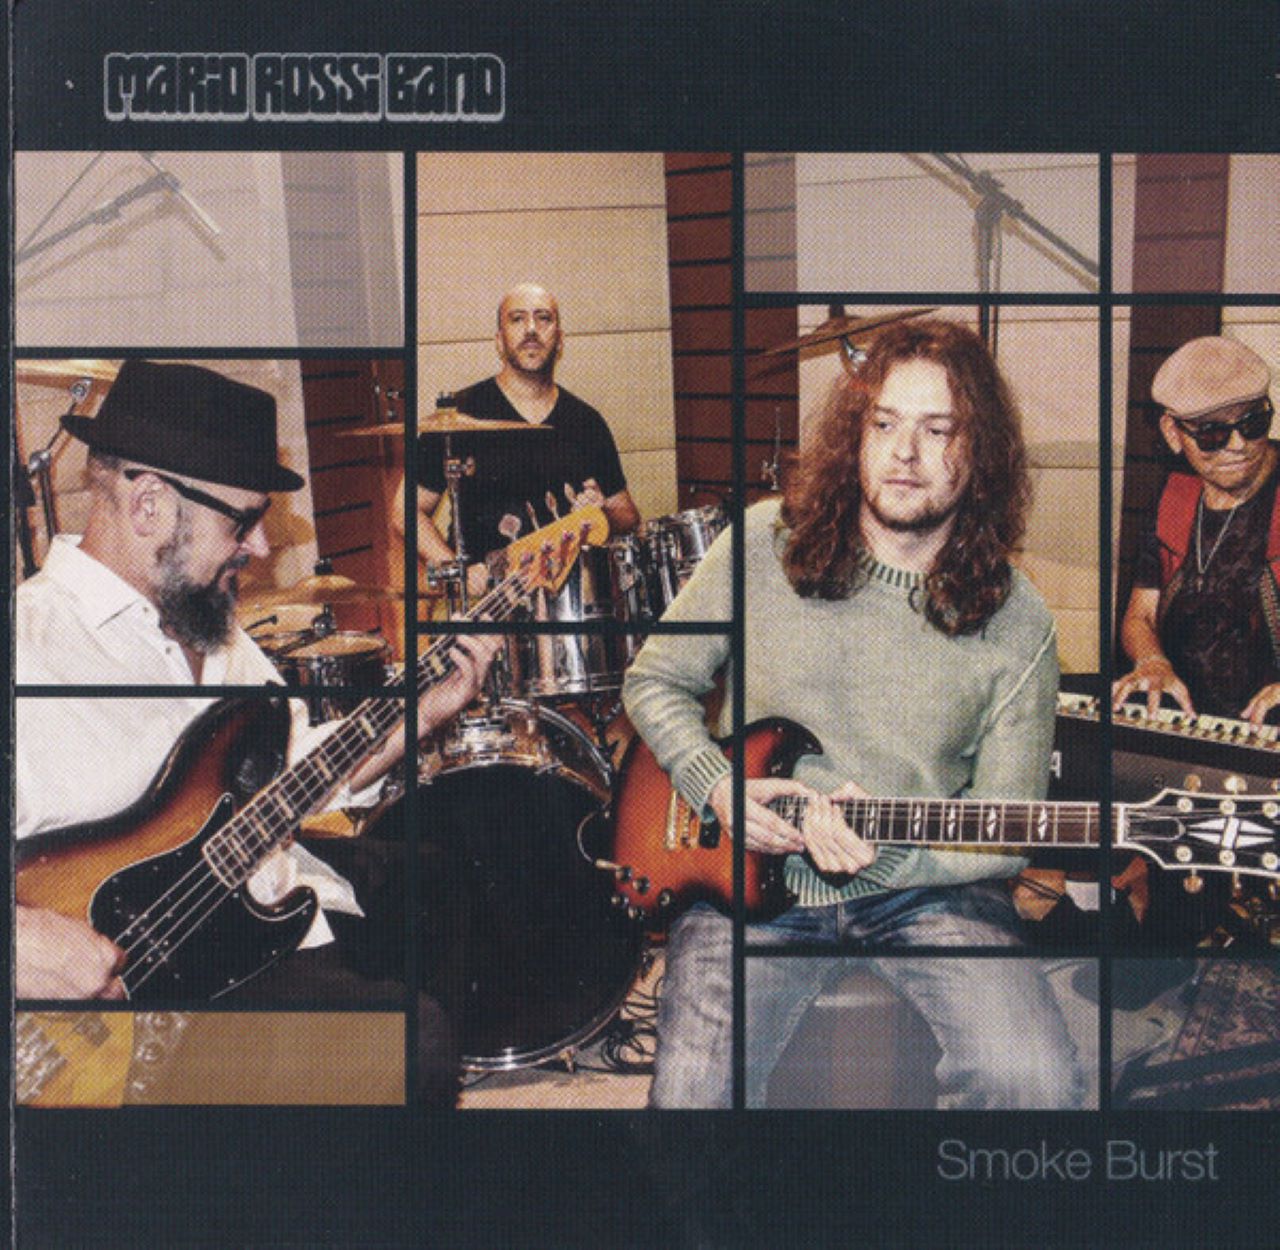 Mario Rossi - Smoke Burst cover album